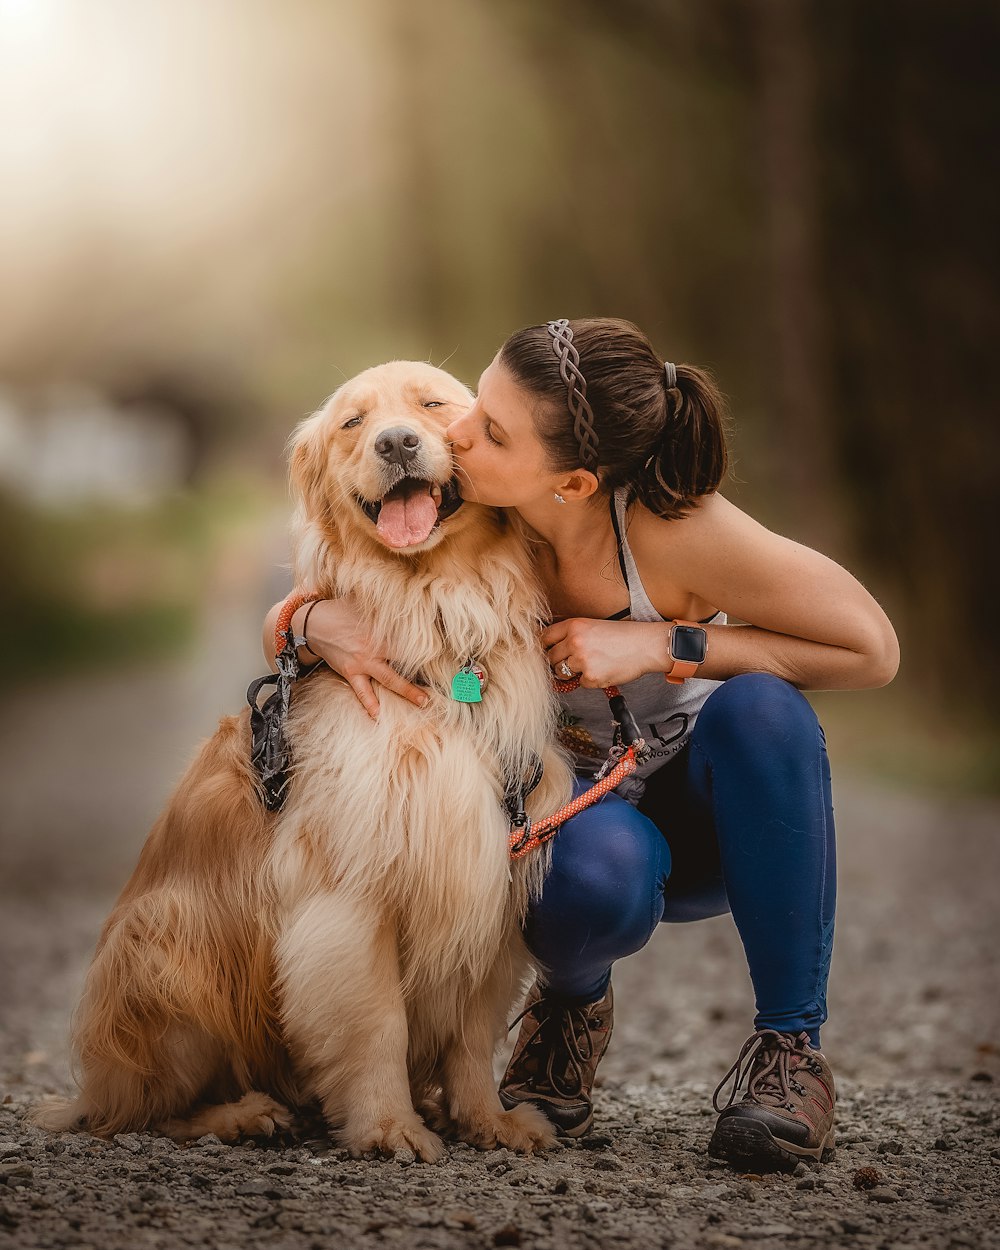 Una donna che bacia il suo cane sulla guancia